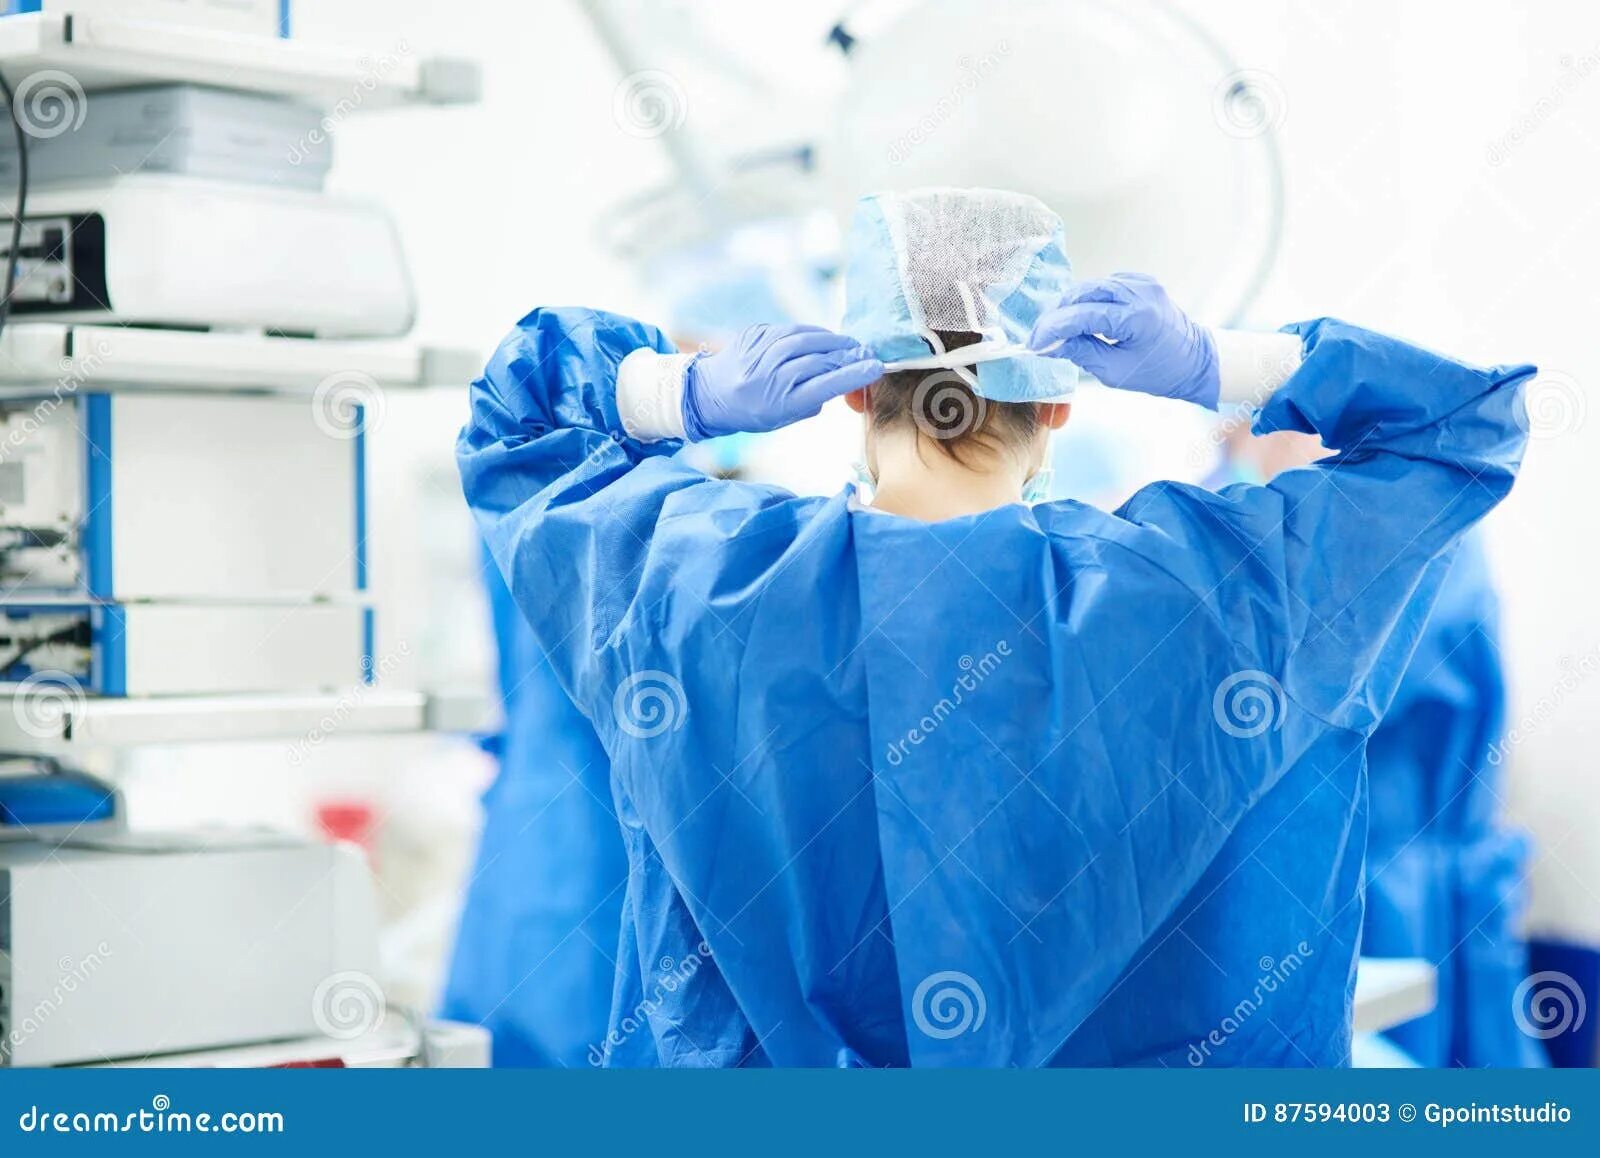 Руки доктора перед операцией. Подготовка рук к операции картинки. Картинки перед операцией